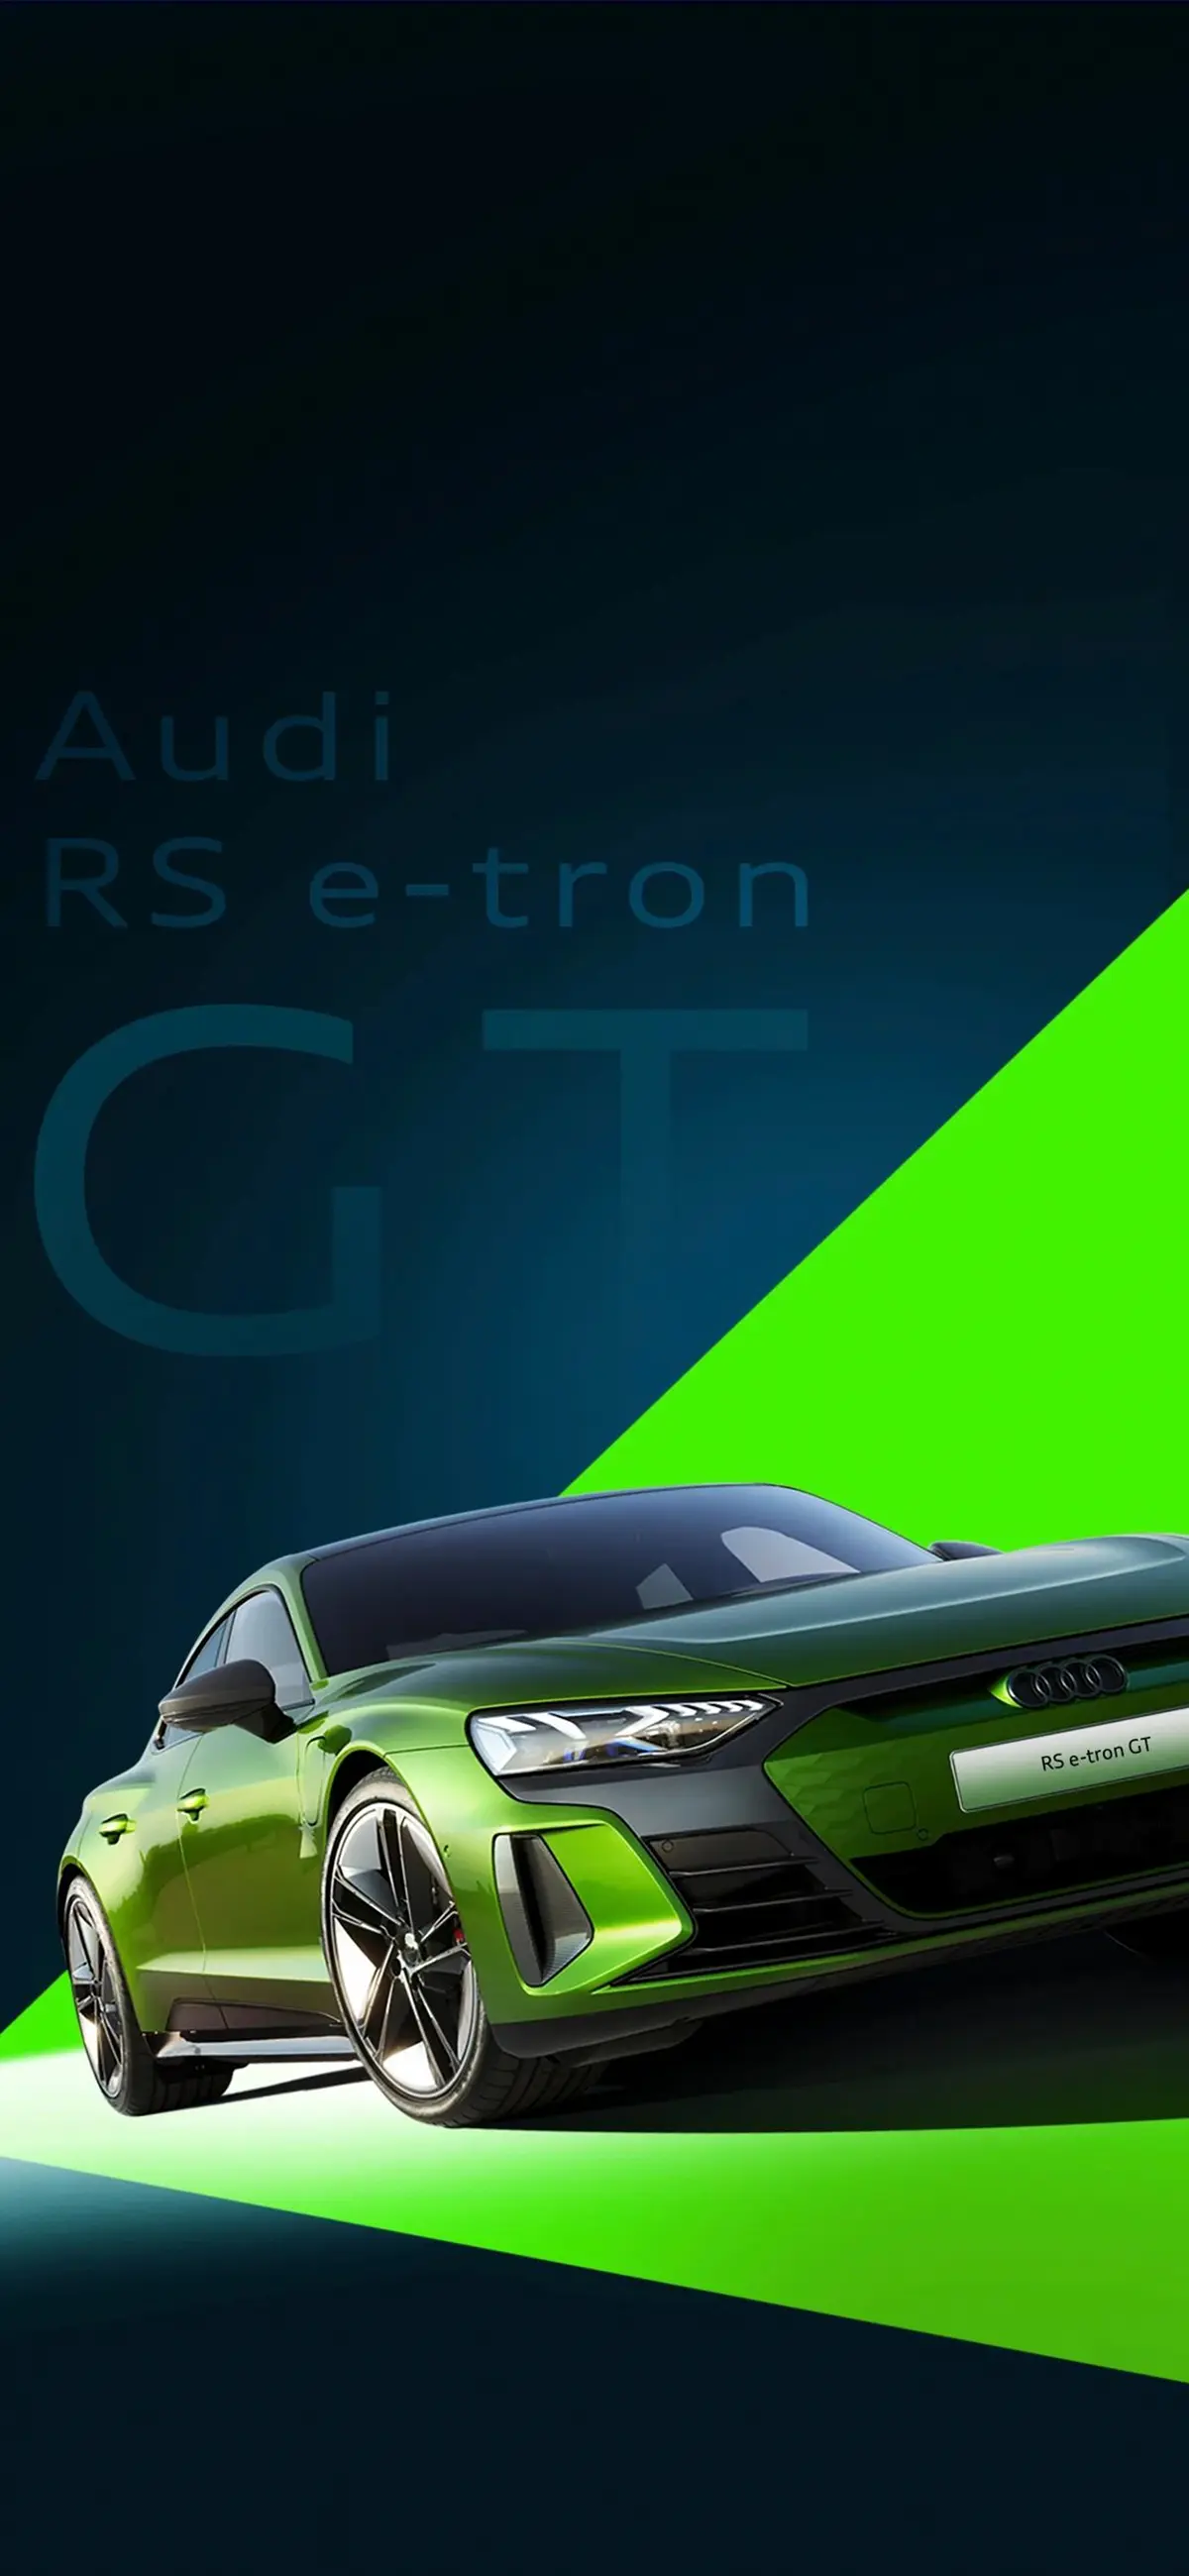 奥迪RS e-tron GT495km